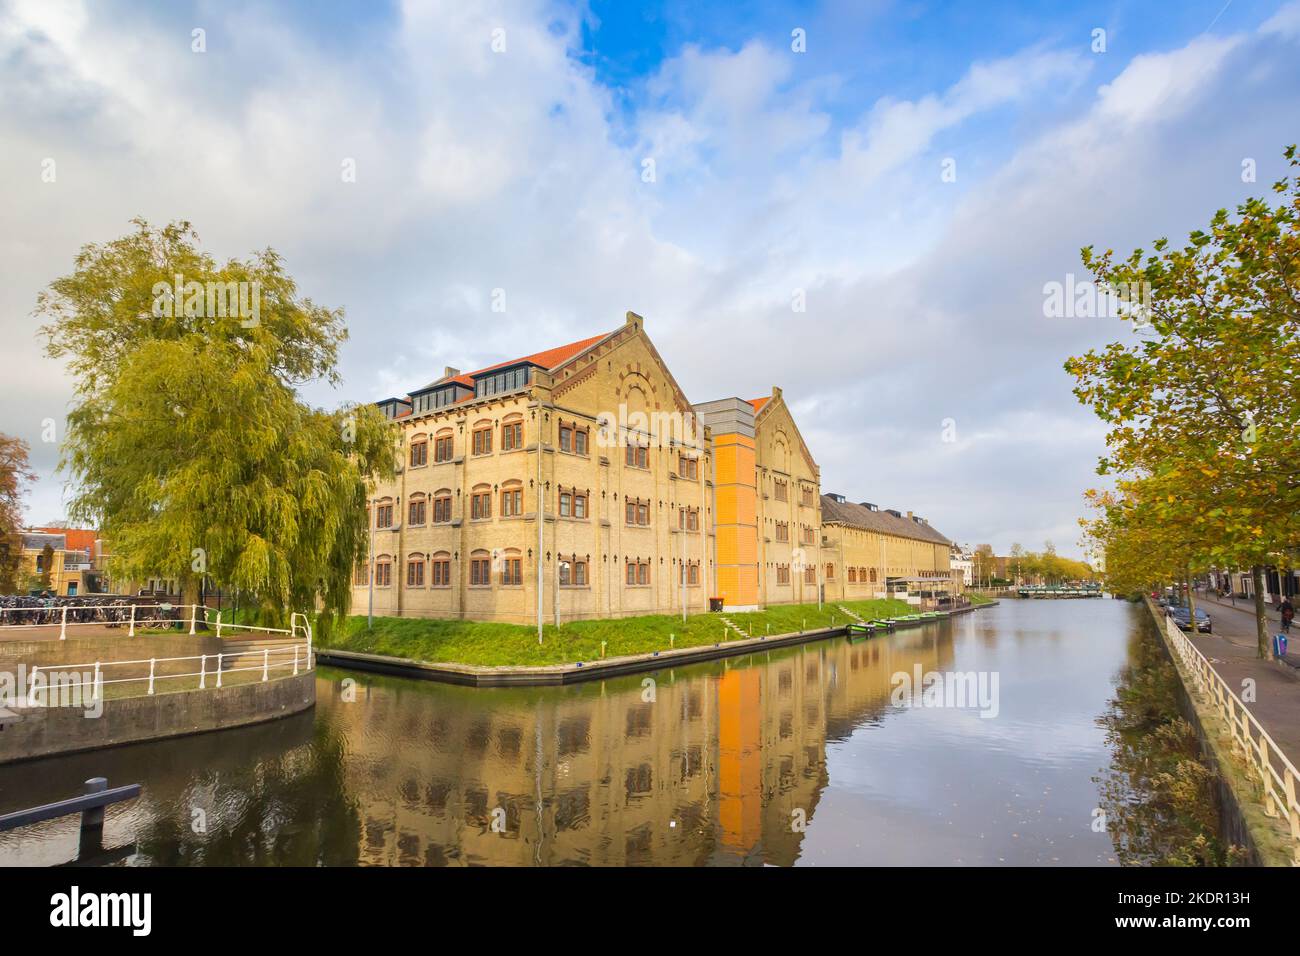 Edificio histórico de Blokhuispoort en el canal en Leeuwarden, Países Bajos Foto de stock